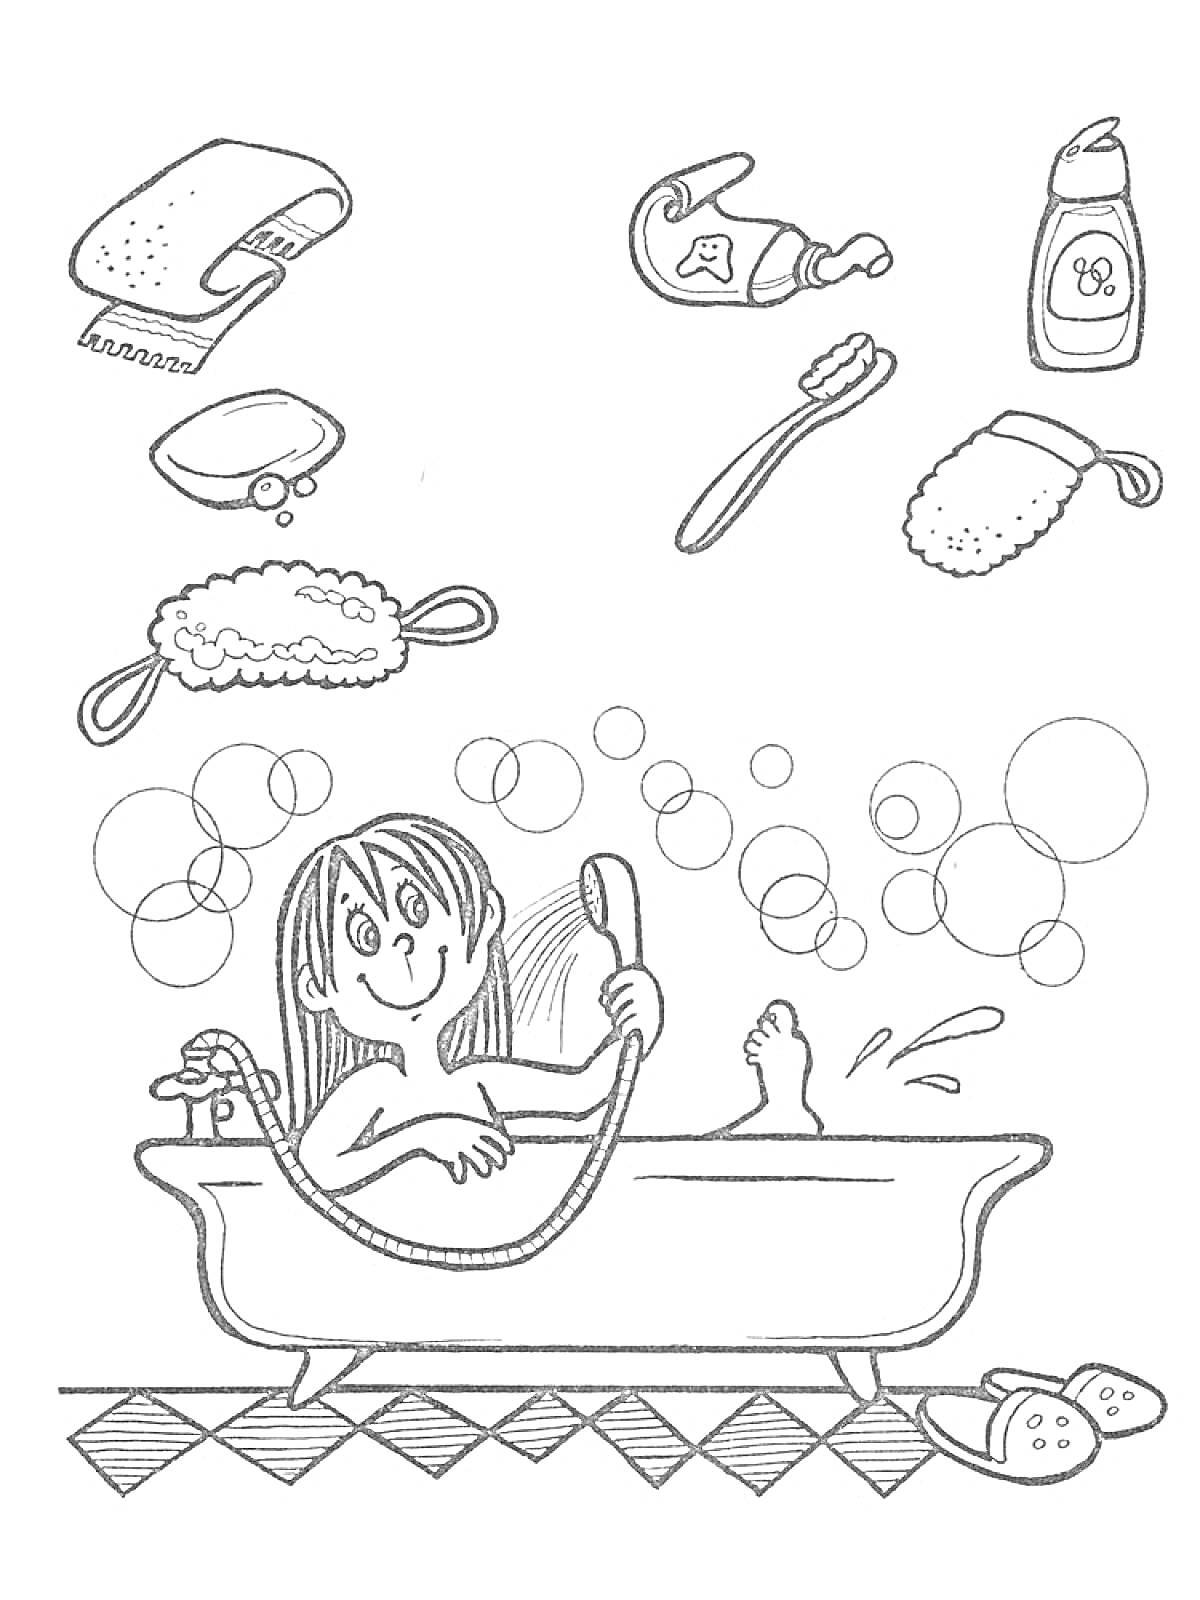 Девочка в ванной с пеной, работающий душ, полотенце, мыло, мочалка, зубная щетка, зубная паста, гель для душа, тапки